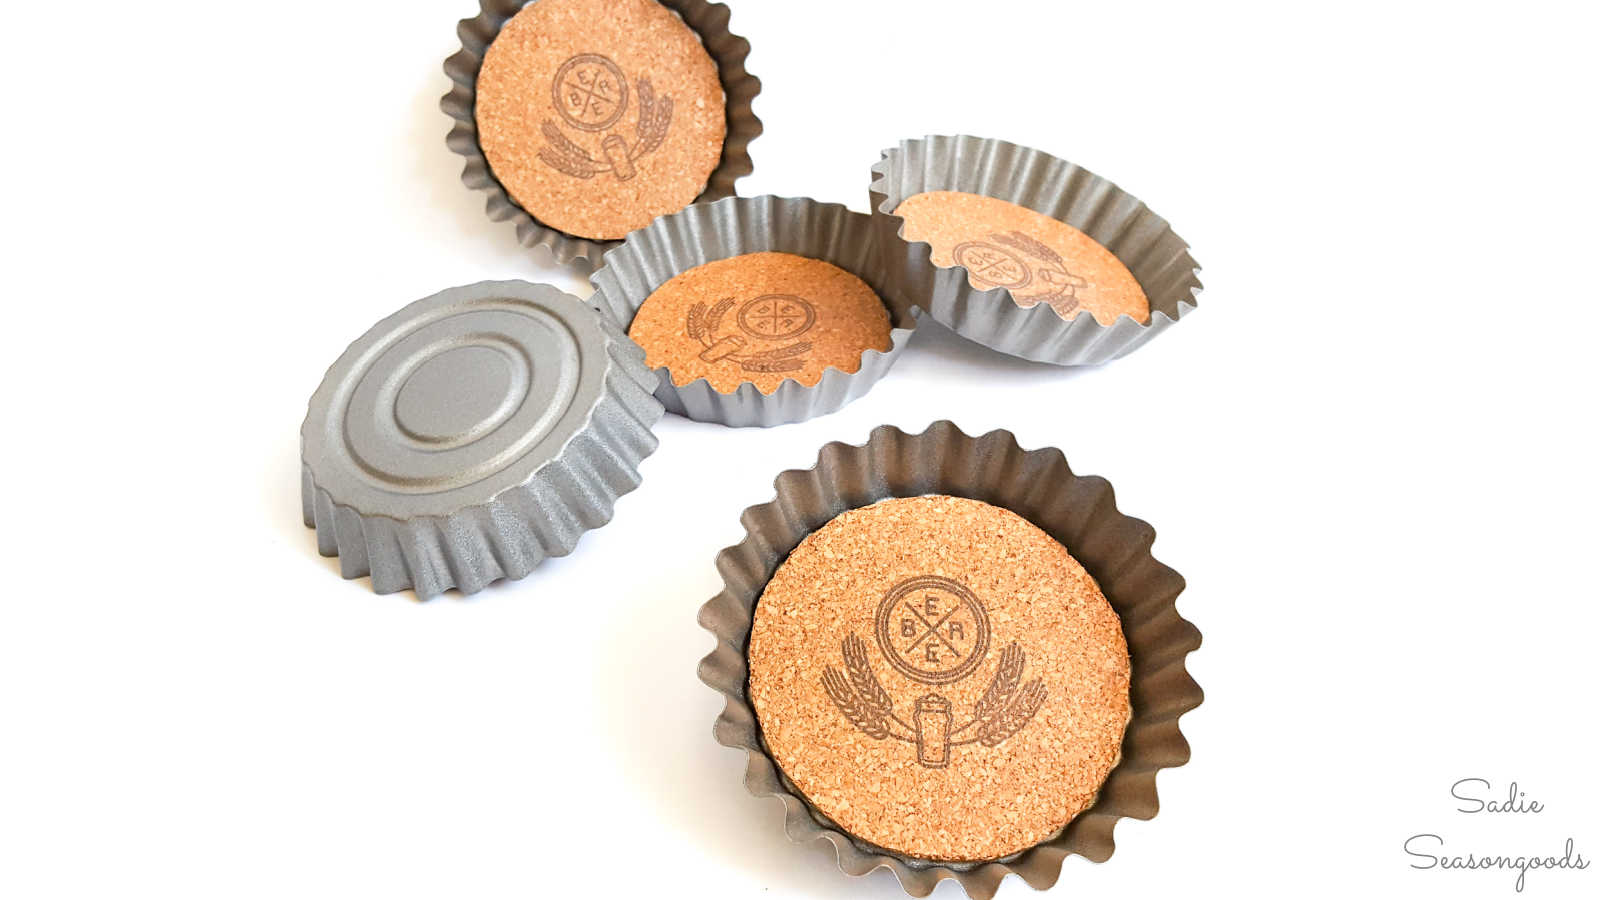 cork coasters inside tart tins to look like beer bottle caps